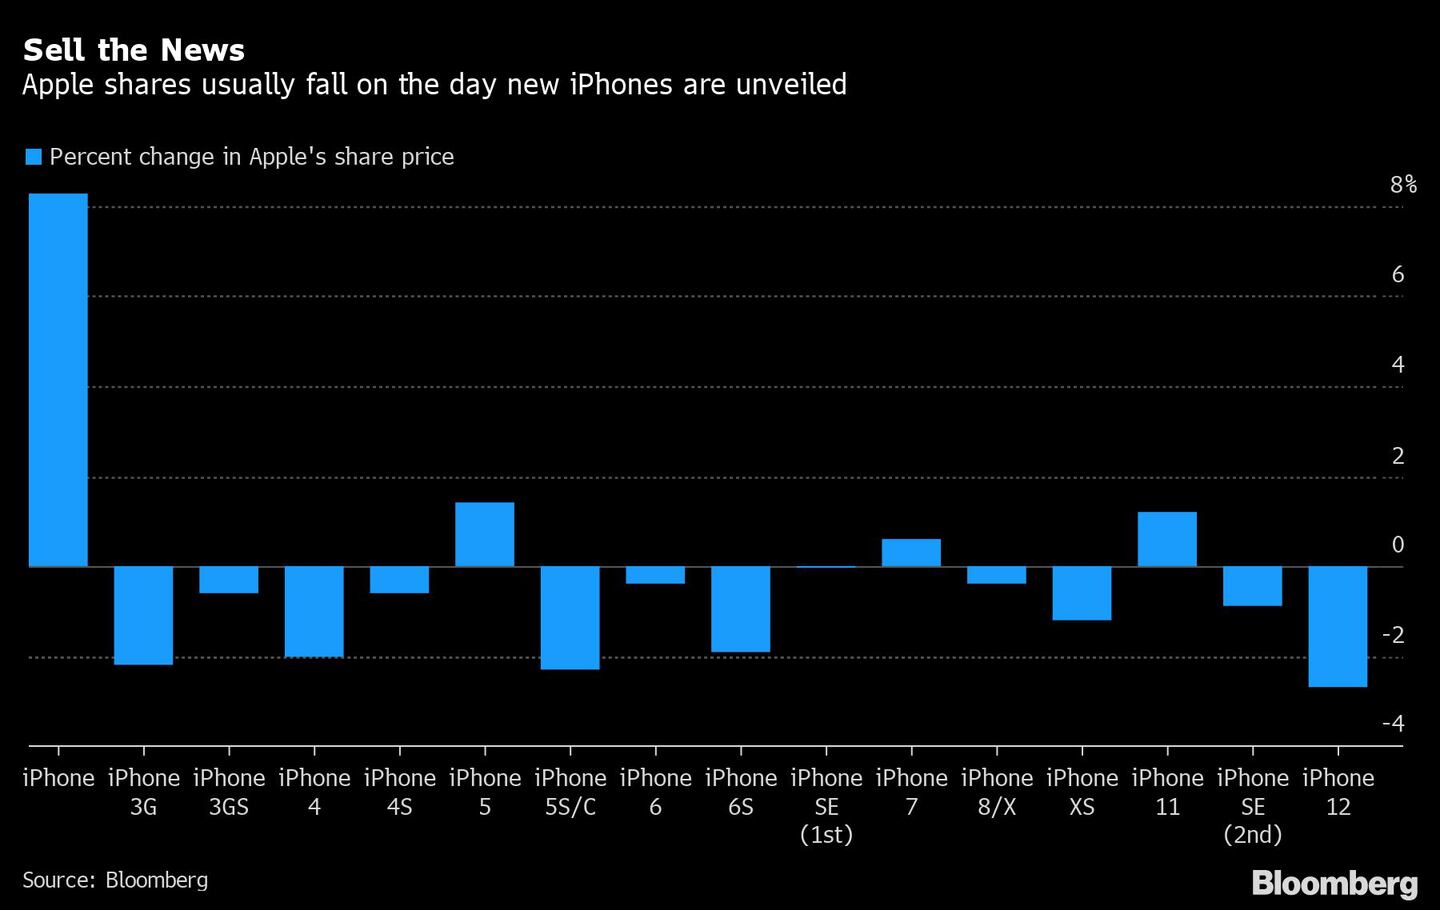 Las acciones de Apple usualmente caen el día en que nuevos iPhone son revelados.
Azul: Variación porcentual de la cotización de Apple
dfd